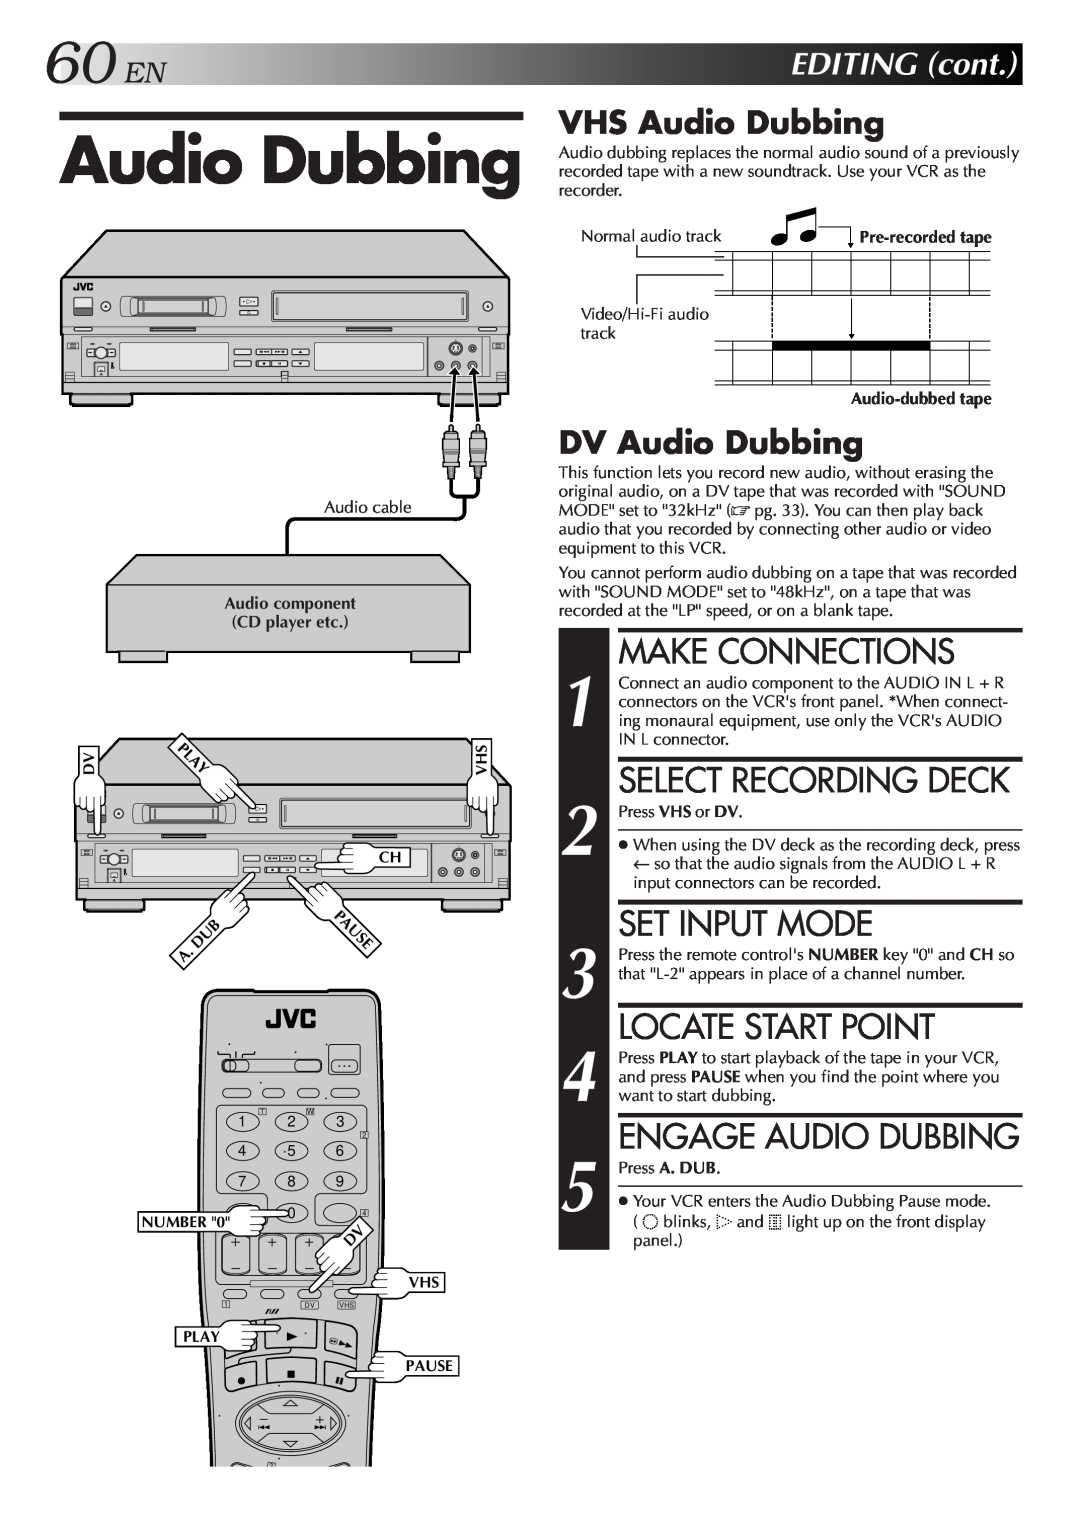 JVC Model HR-DVS1U 60 EN, Select Recording Deck, Set Input Mode, Engage Audio Dubbing, VHS Audio Dubbing, EDITING cont 